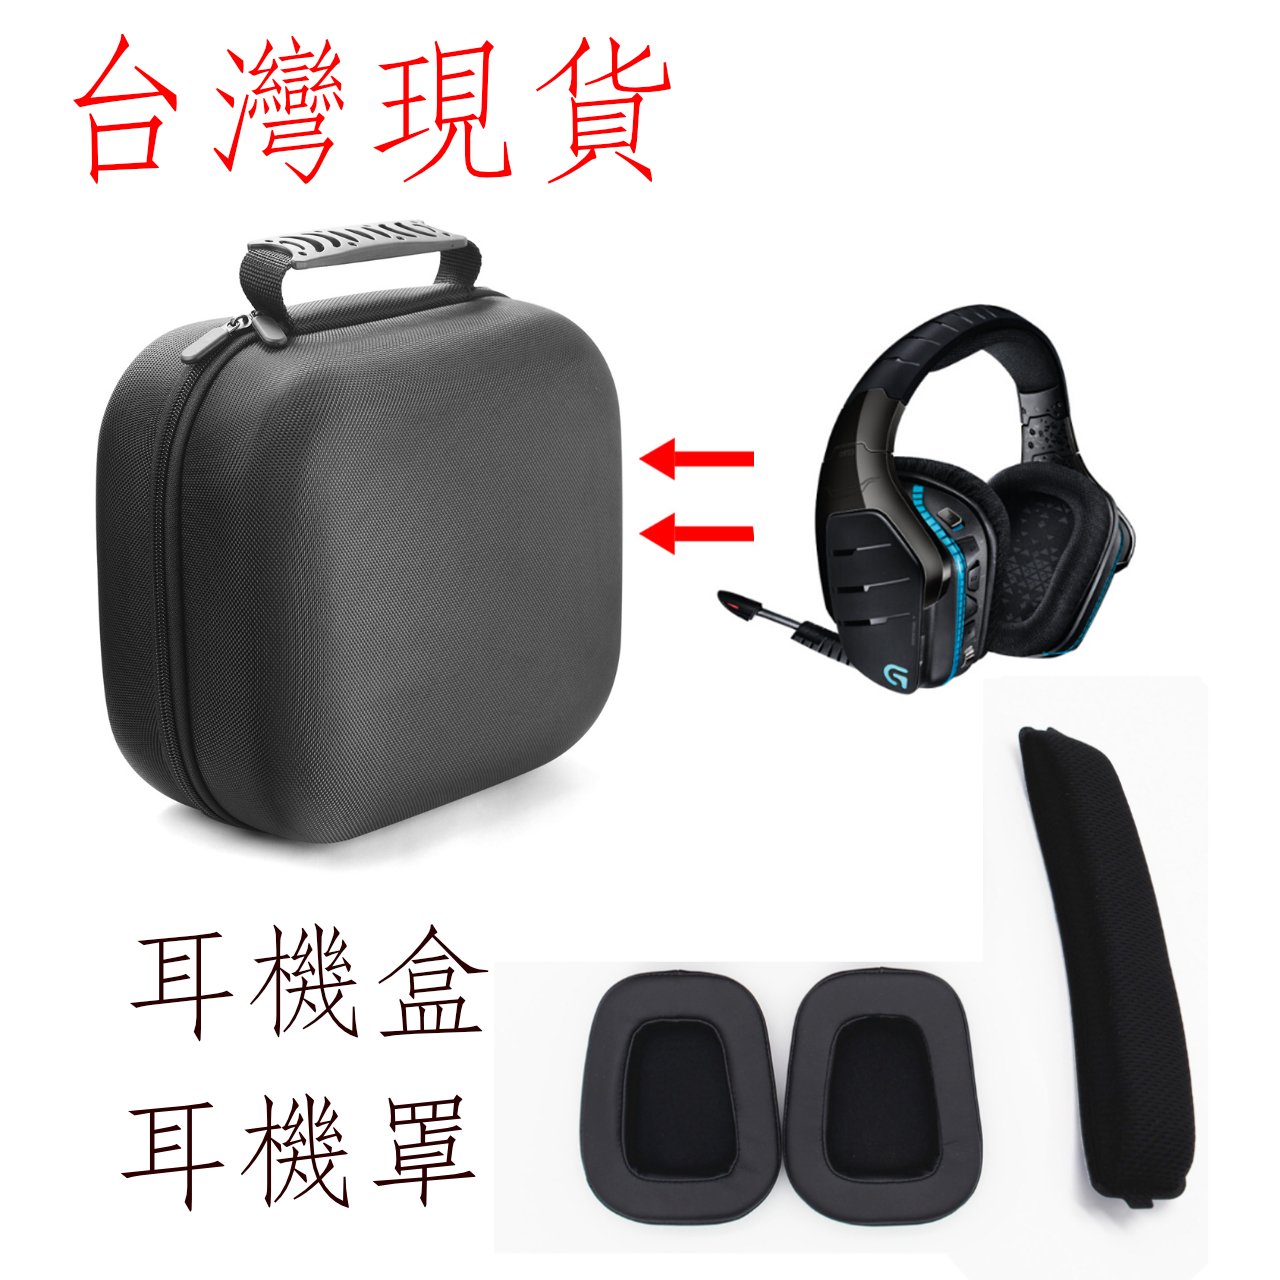 台灣現貨  羅技 耳機盒 g933s耳罩 g633s耳罩 g pro g pro/x 耳罩耳機盒  耳機罩 頭梁貼